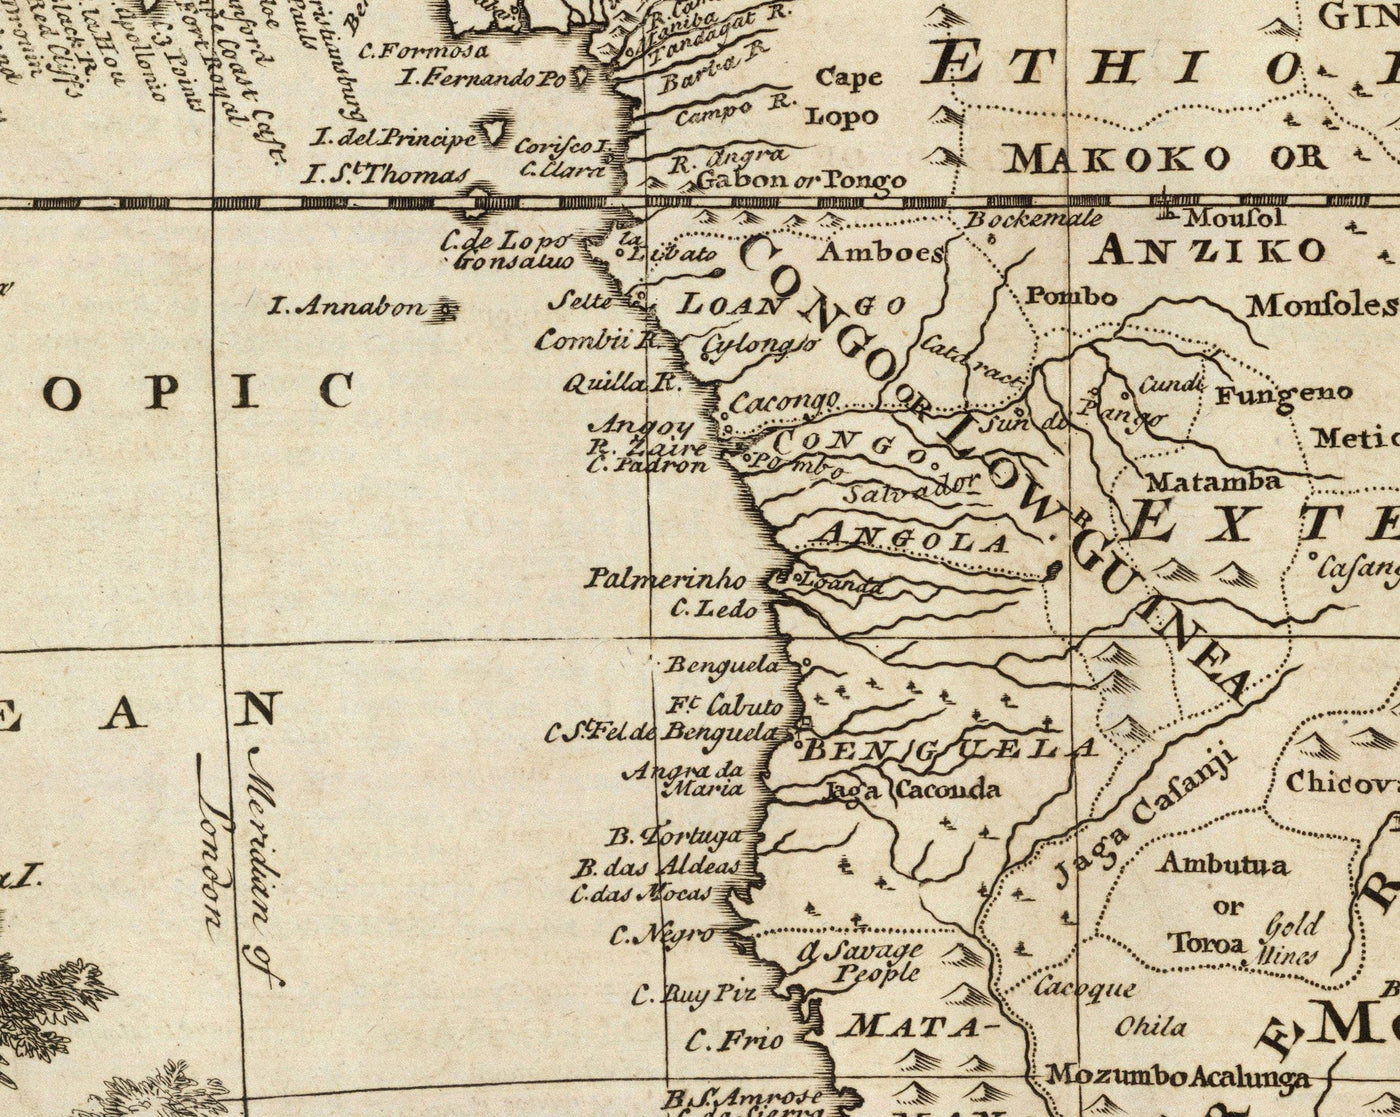 Alte Karte von Afrika, 1747 von Emanuel Bowen - Pre-Colonial - Sklavenhandel, Negholand, Äthiopien, Barbary, Nubia